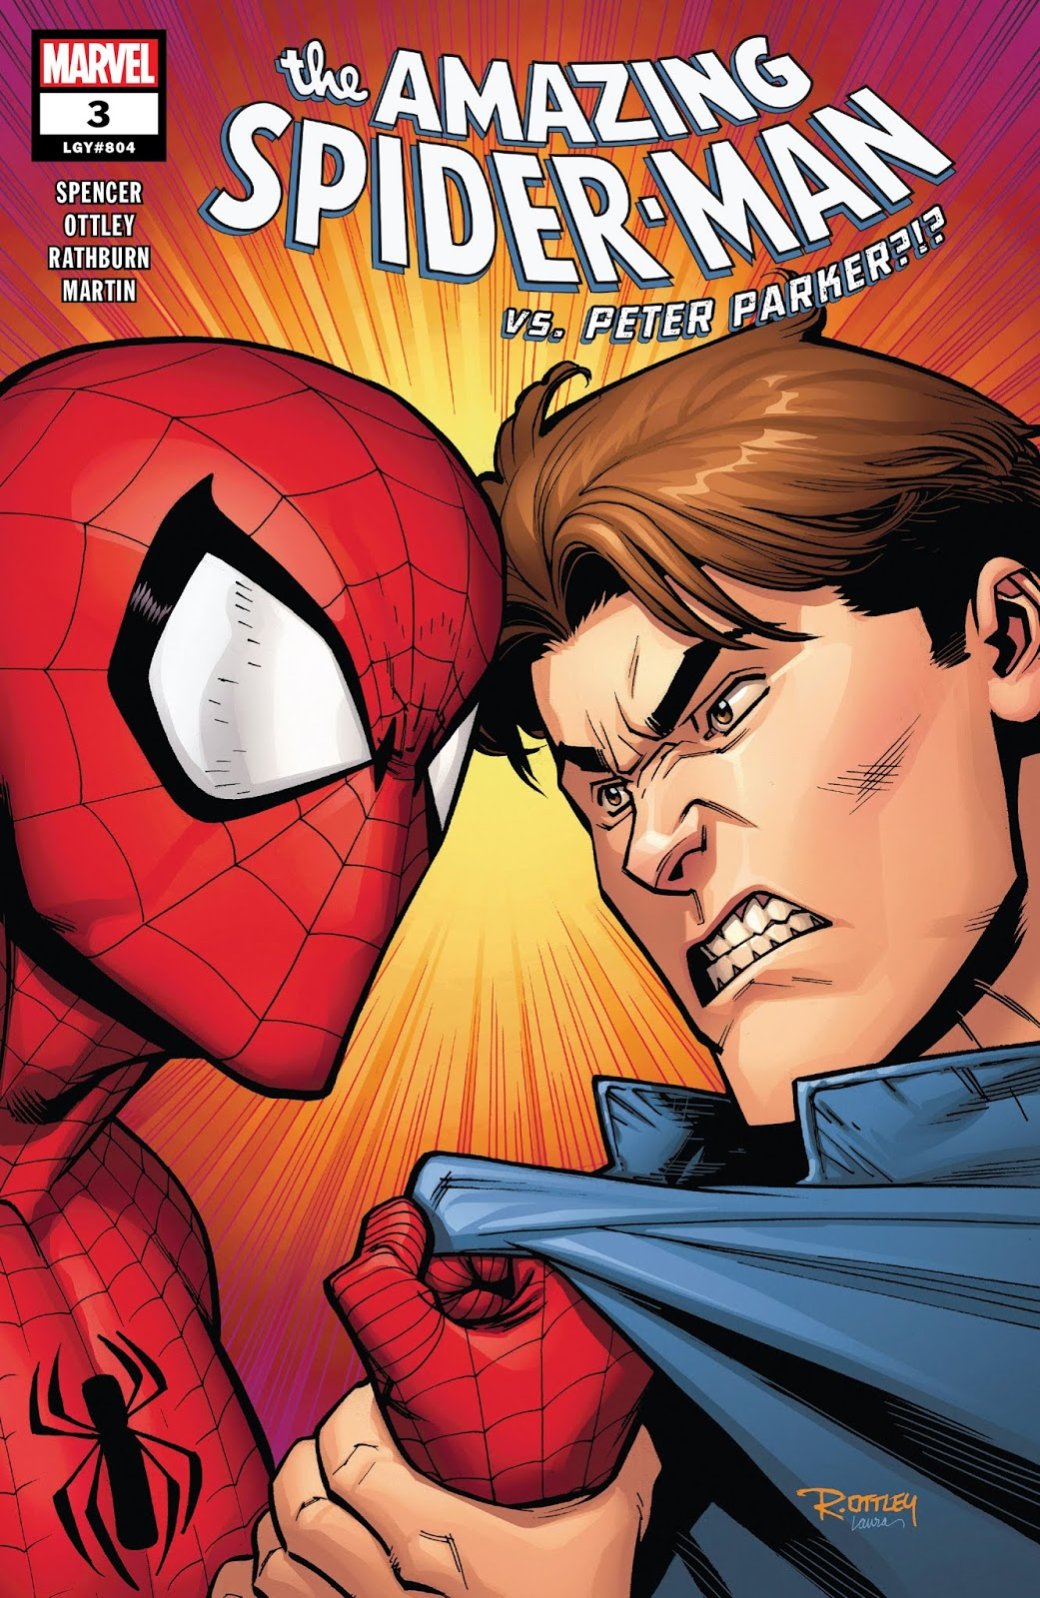 Галерея Человек-паук: Возвращение к основам. Как Marvel спасает супергероя от самой себя - 4 фото